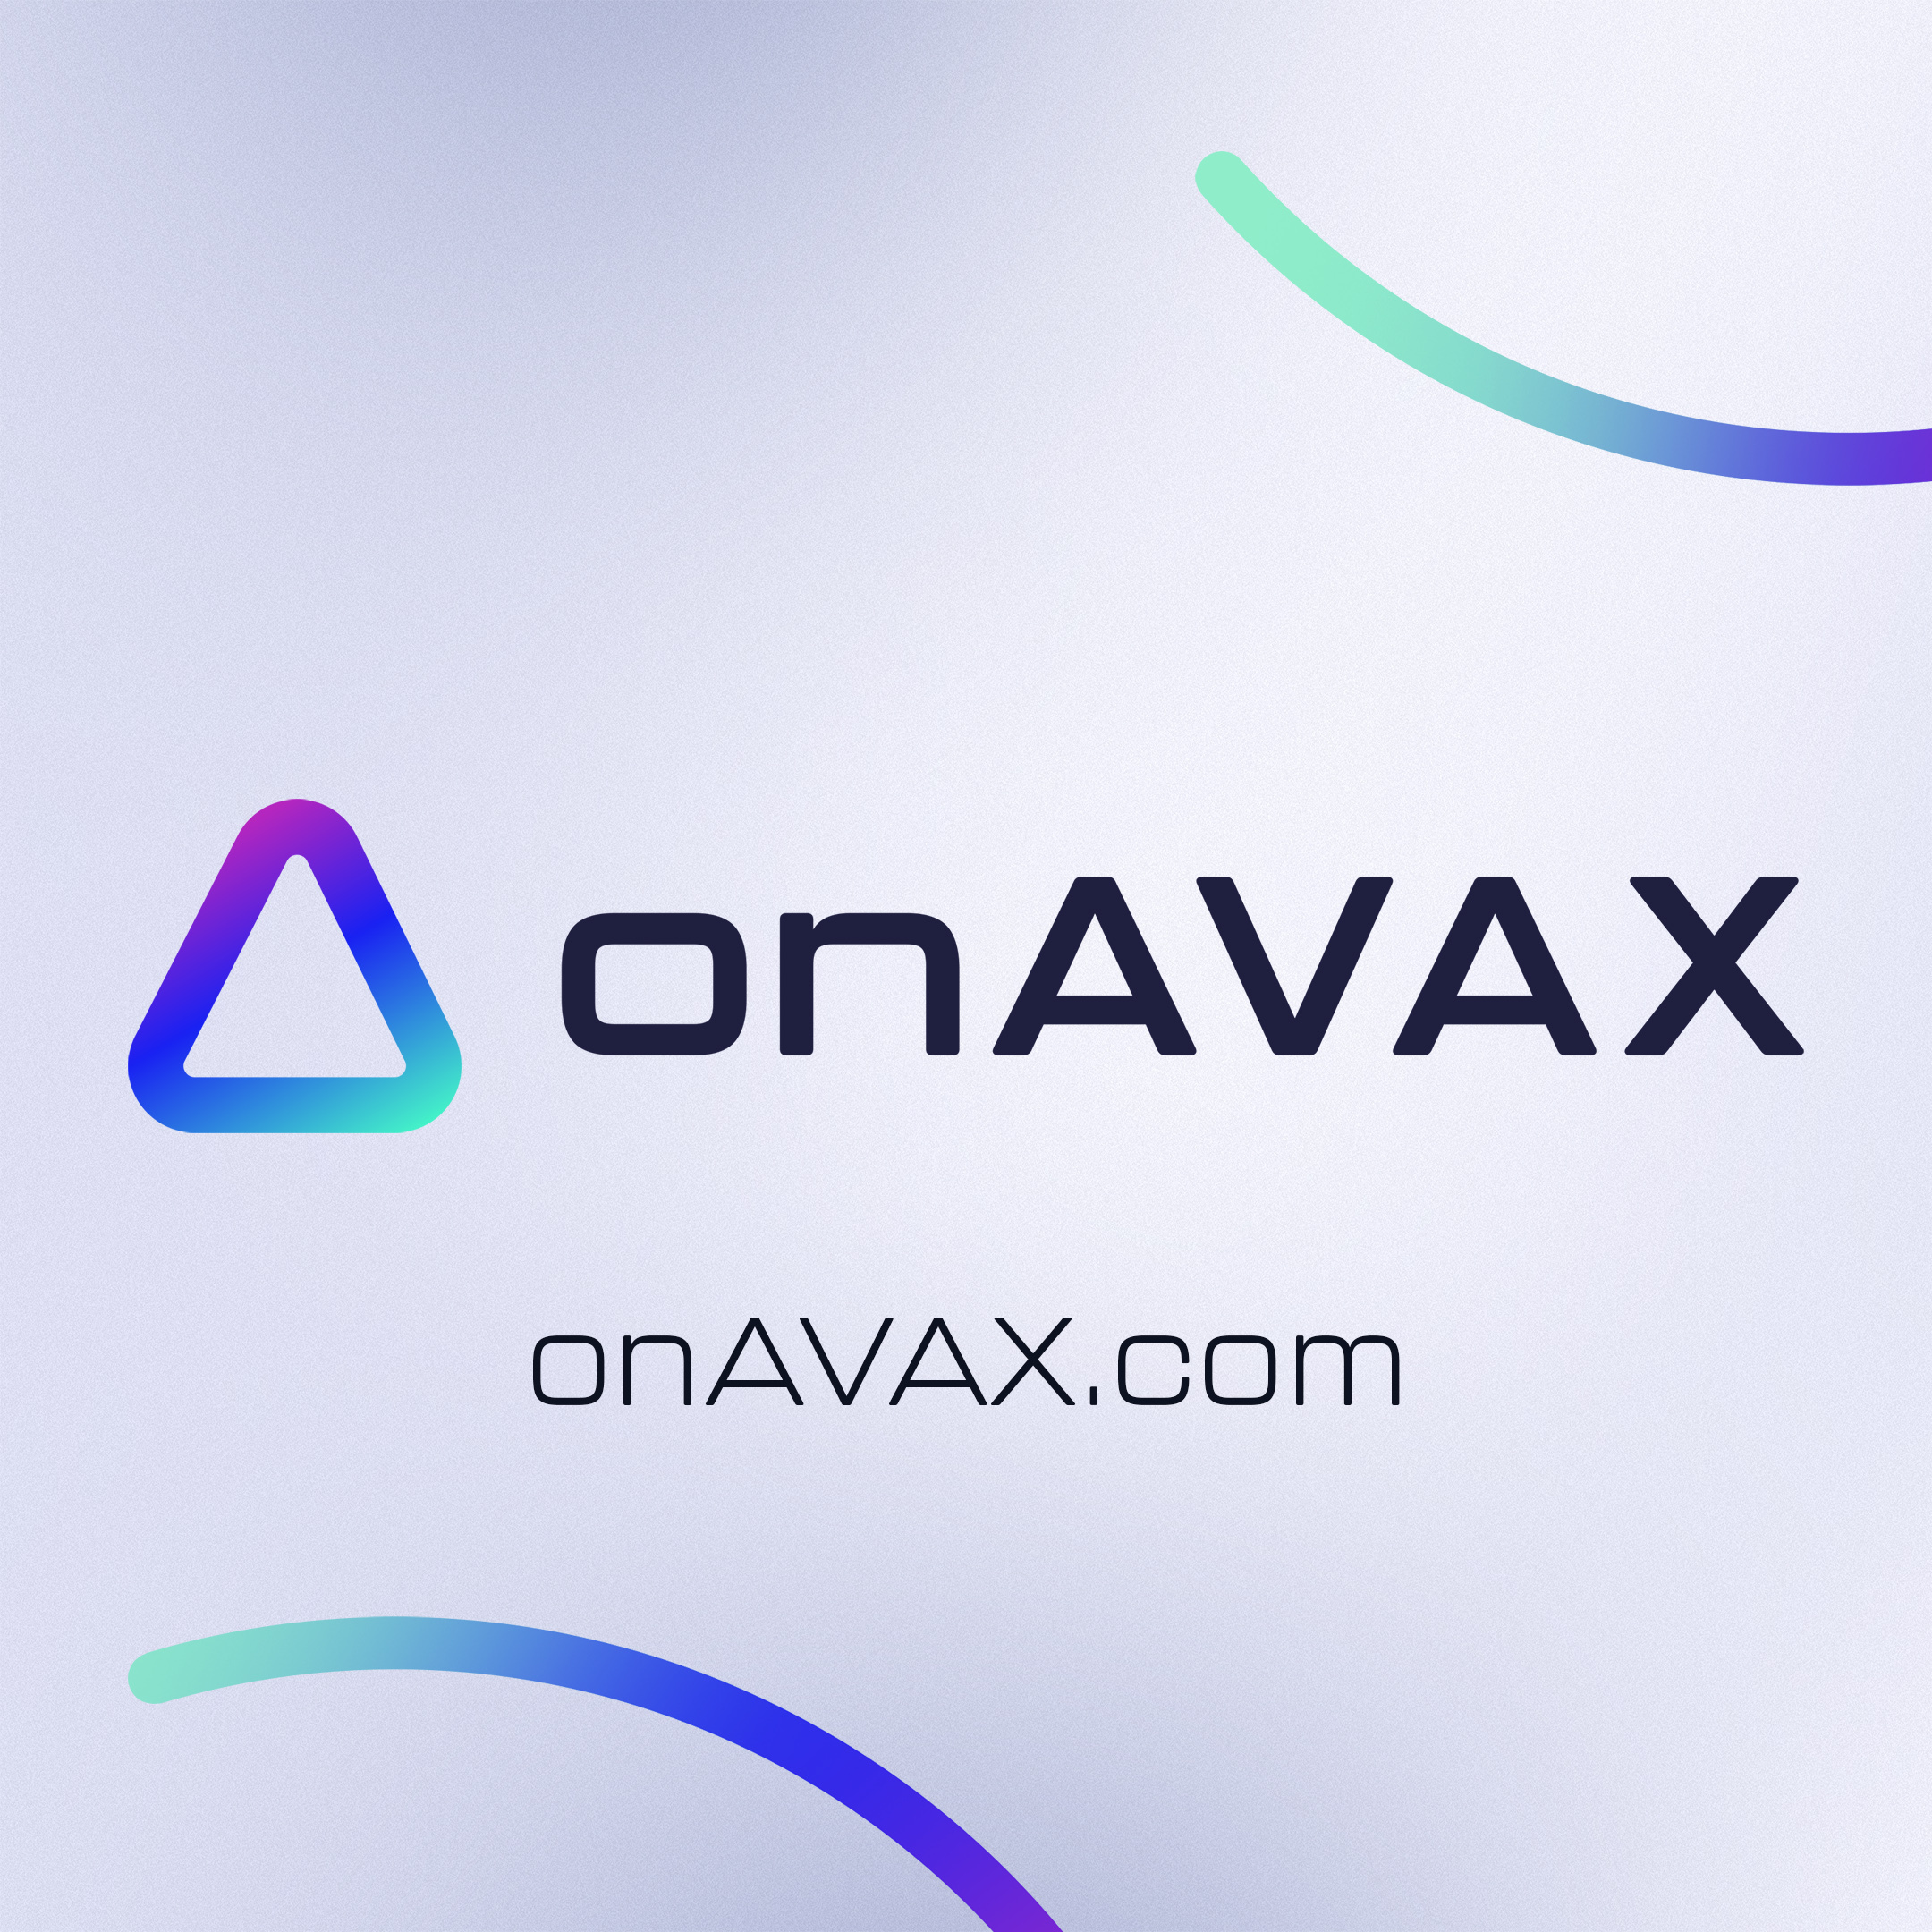 سویپسیکل کو کمیونٹی میں onAVAX لانے کے لیے اپنے پہلے ایئر ڈراپ اور onXRP کے ساتھ شراکت کا اعلان کرنے پر فخر ہے! پلیٹو بلاکچین ڈیٹا انٹیلی جنس۔ عمودی تلاش۔ عی